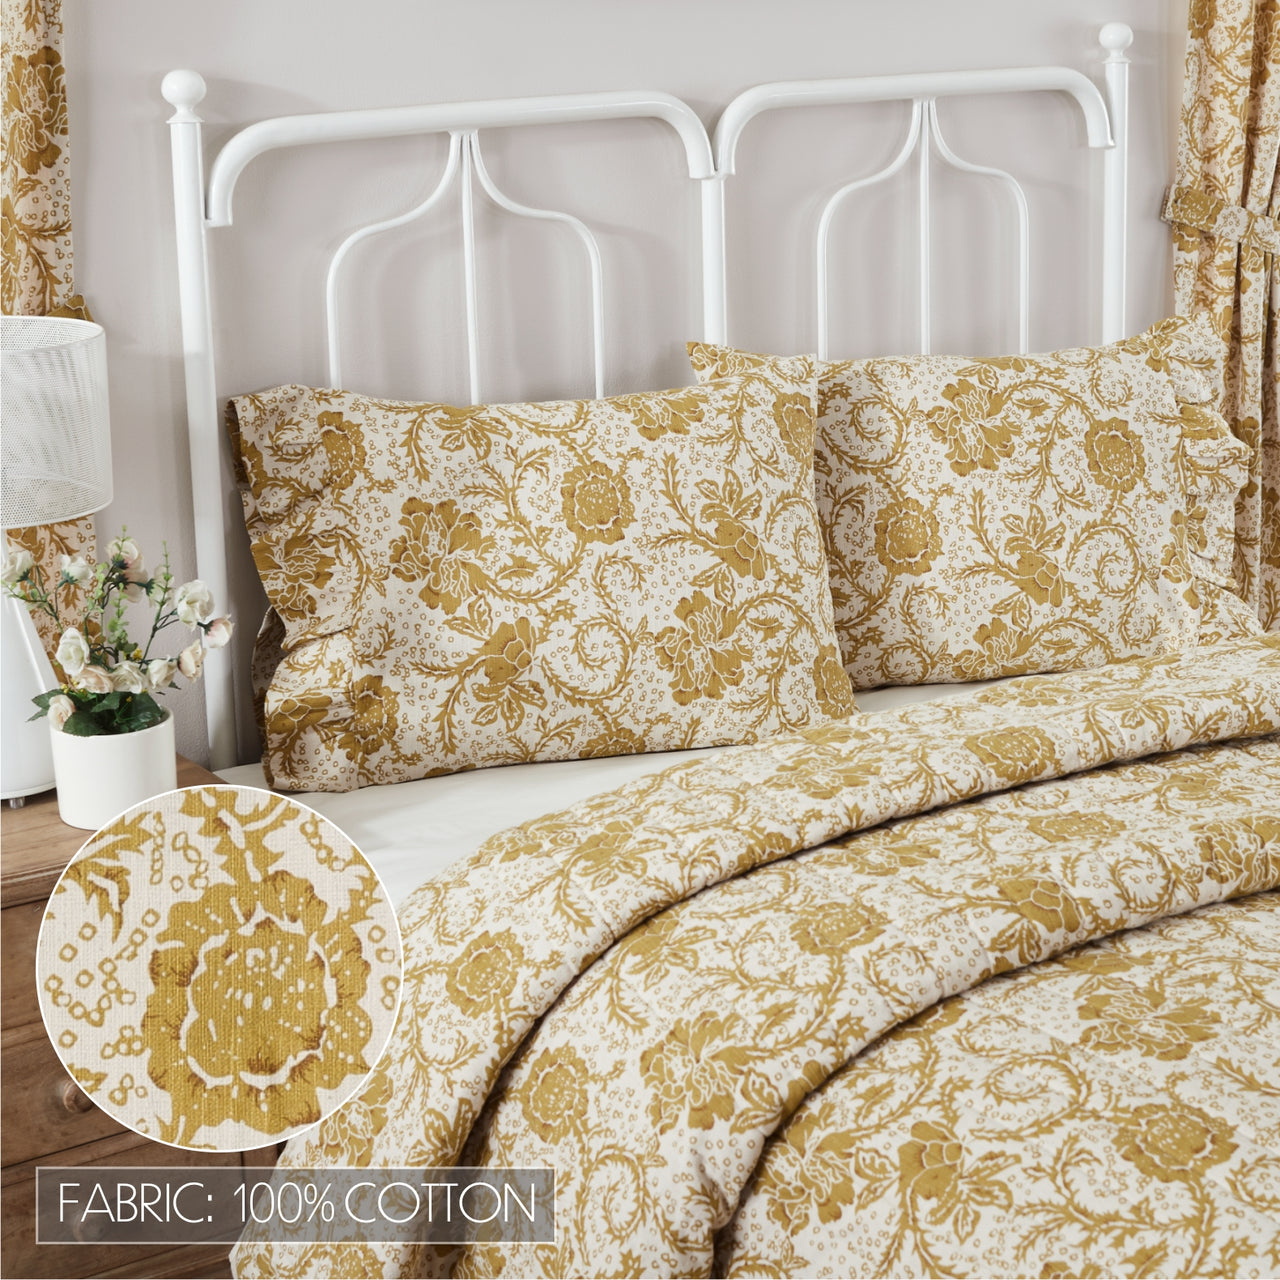 Dorset Gold Floral Ruffled Standard Pillow Case Set of 2 21x26+4 VHC Brands